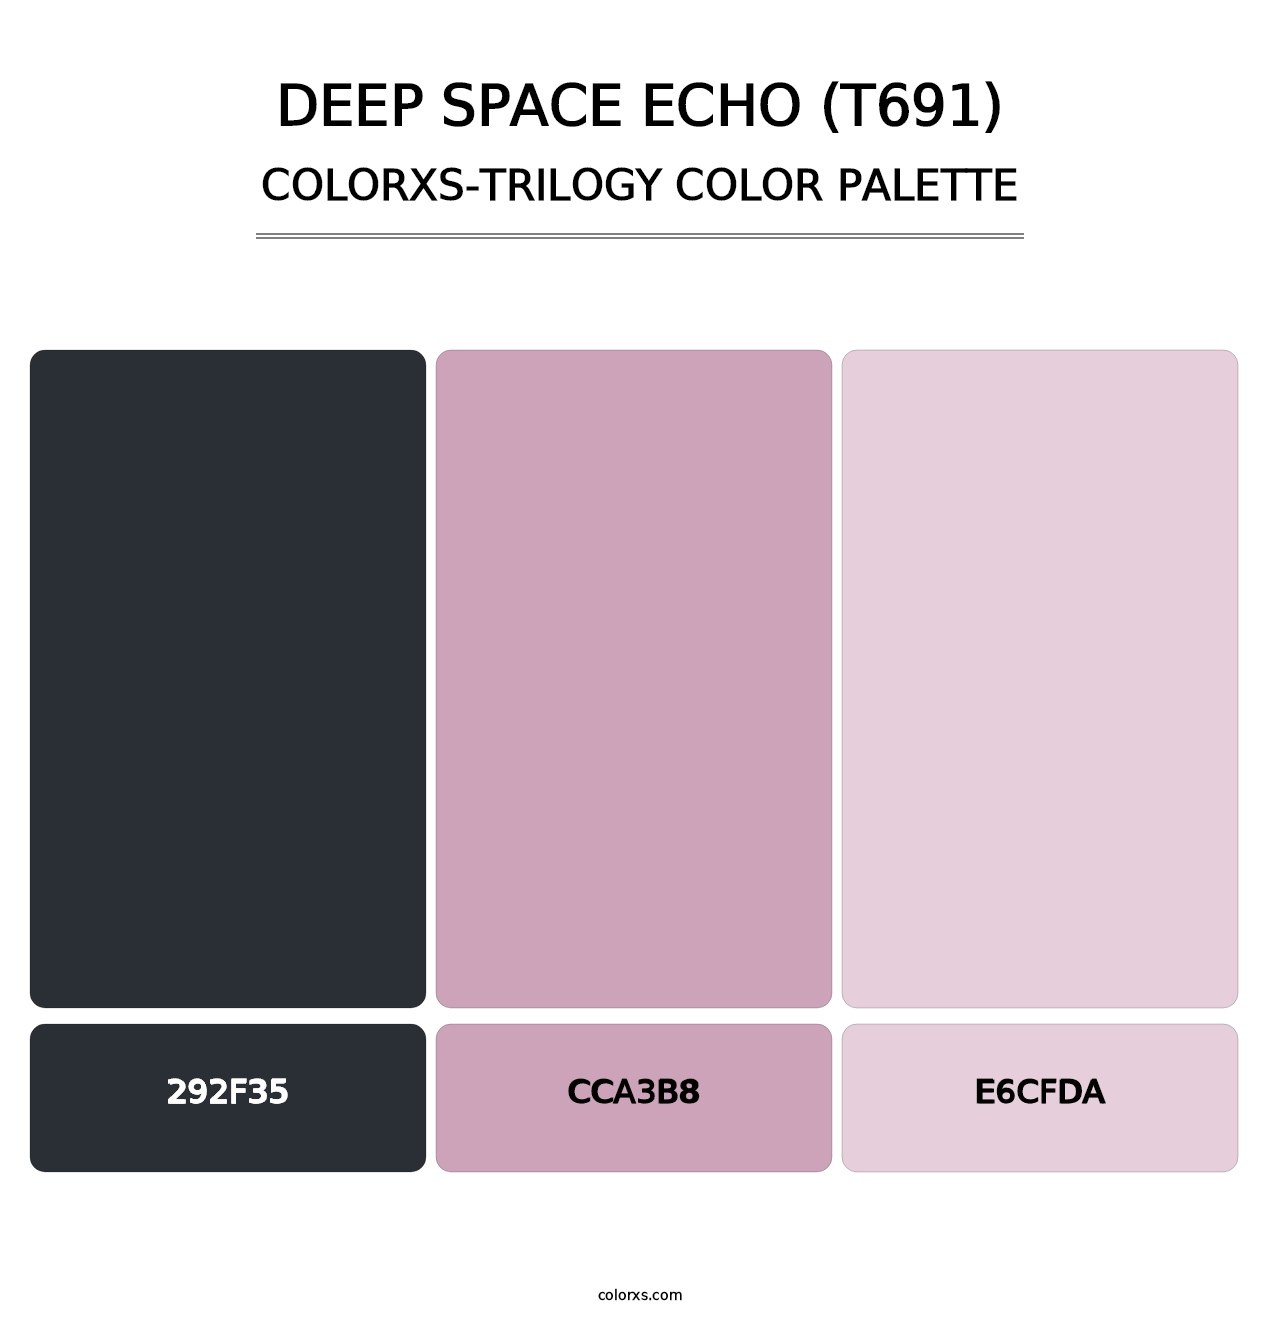 Deep Space Echo (T691) - Colorxs Trilogy Palette